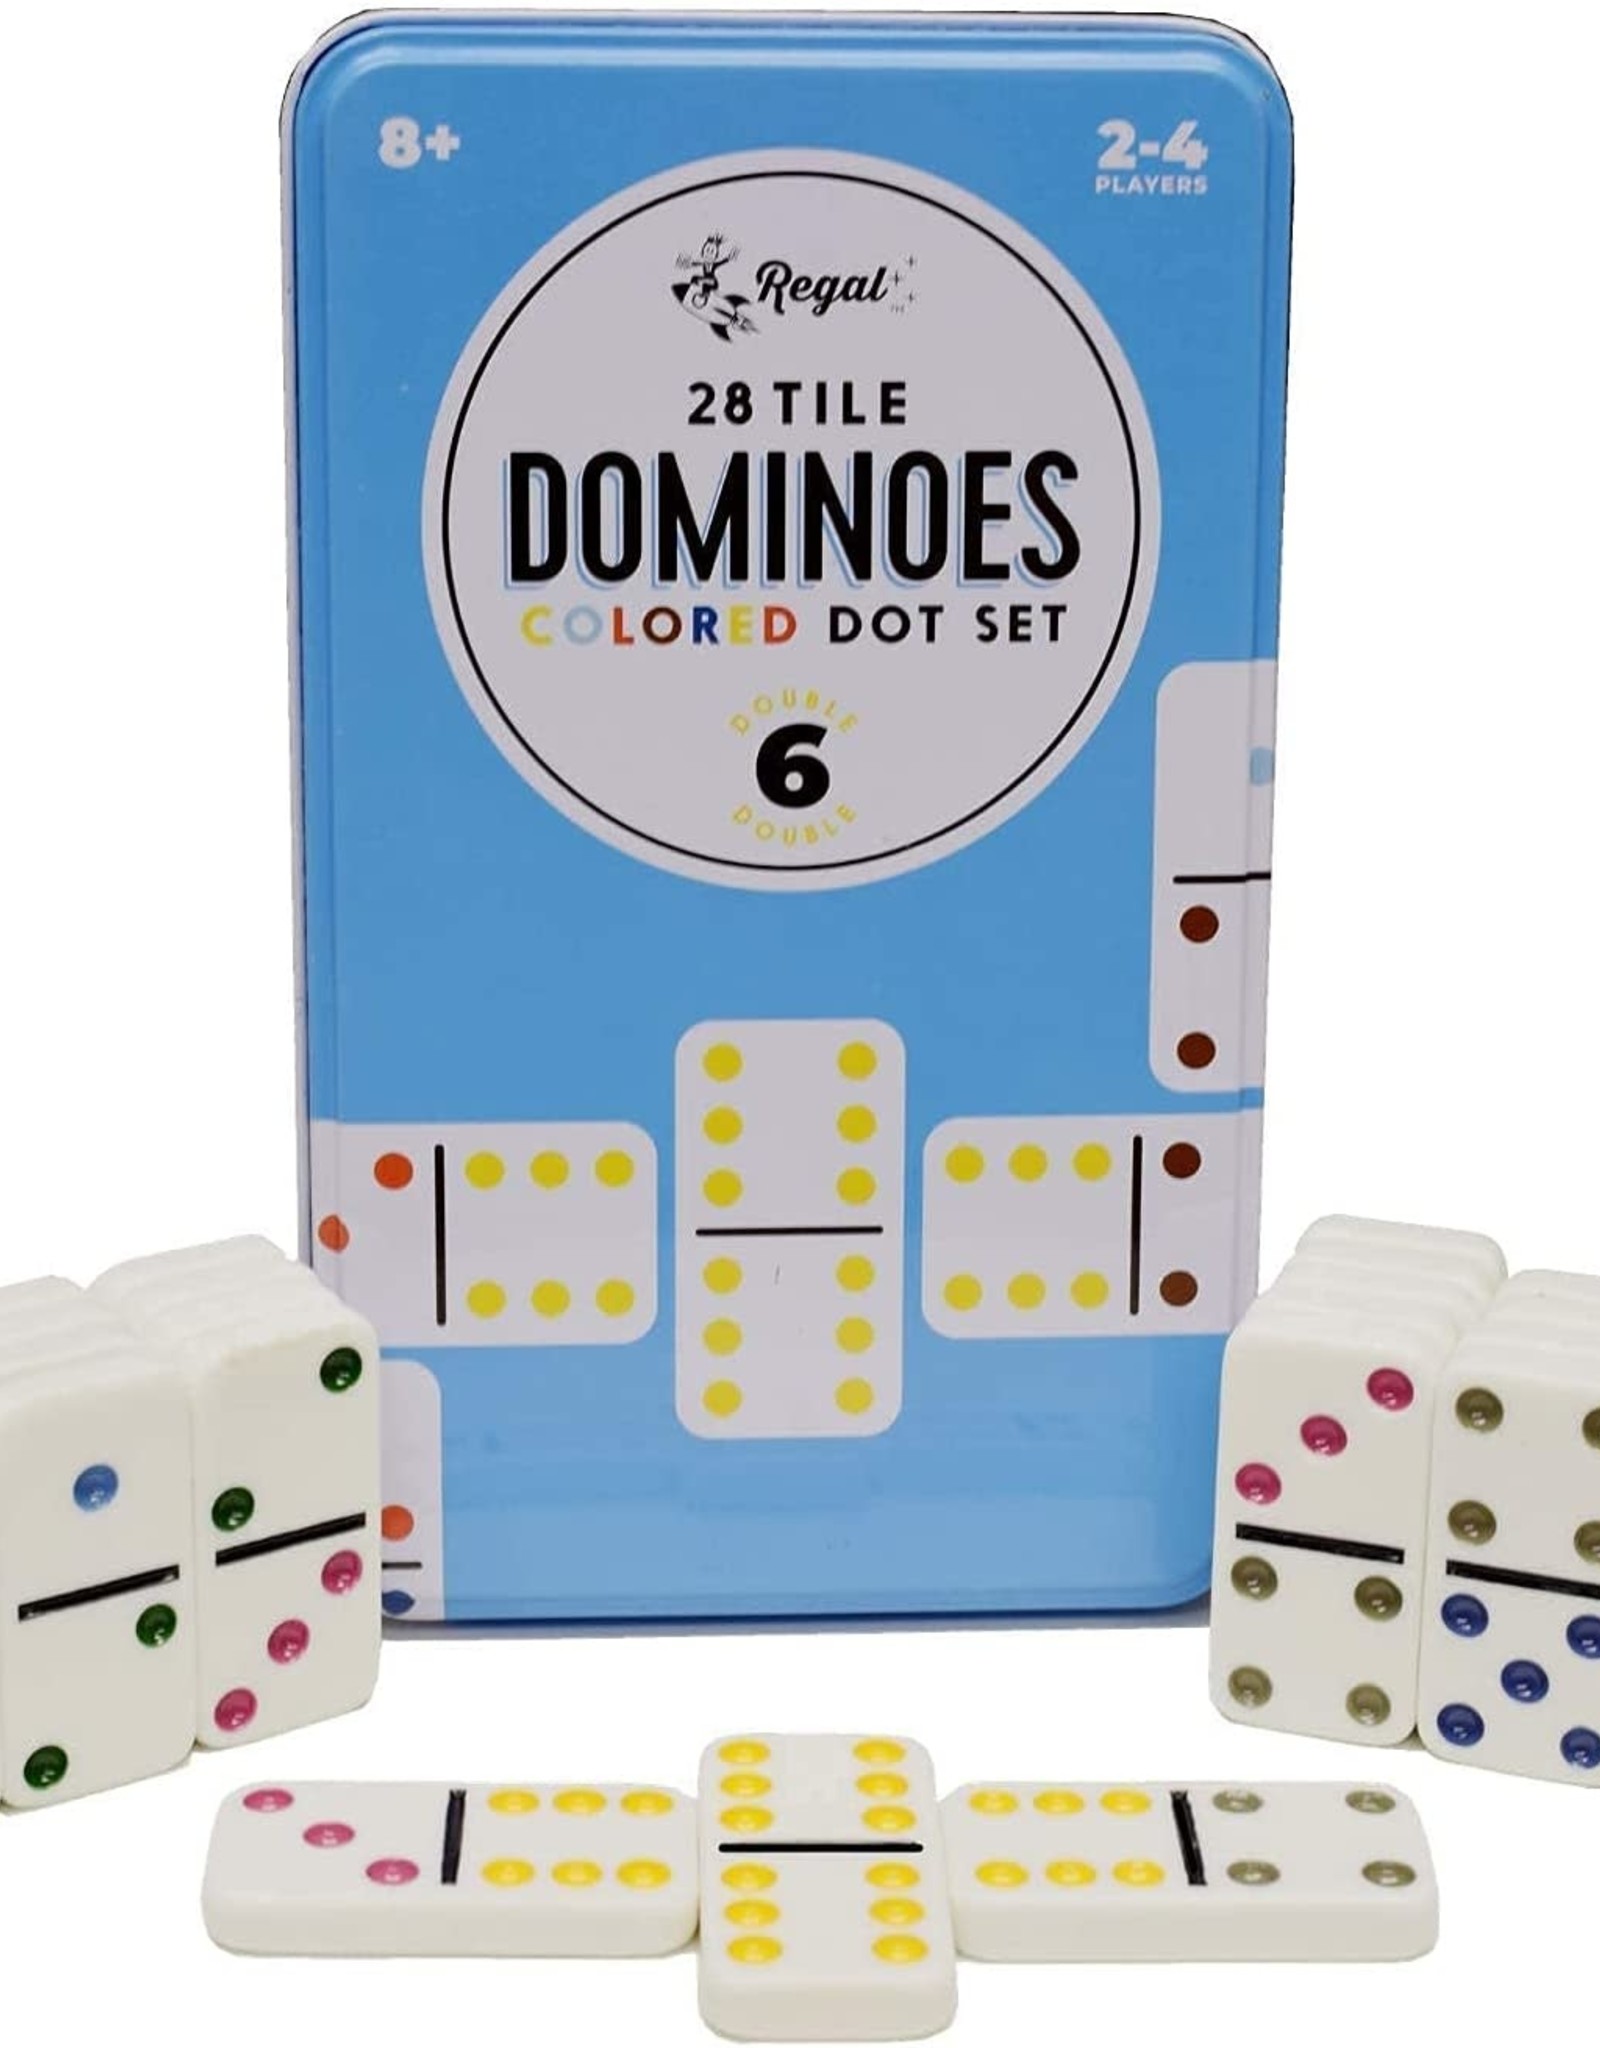 Double 6 Domino